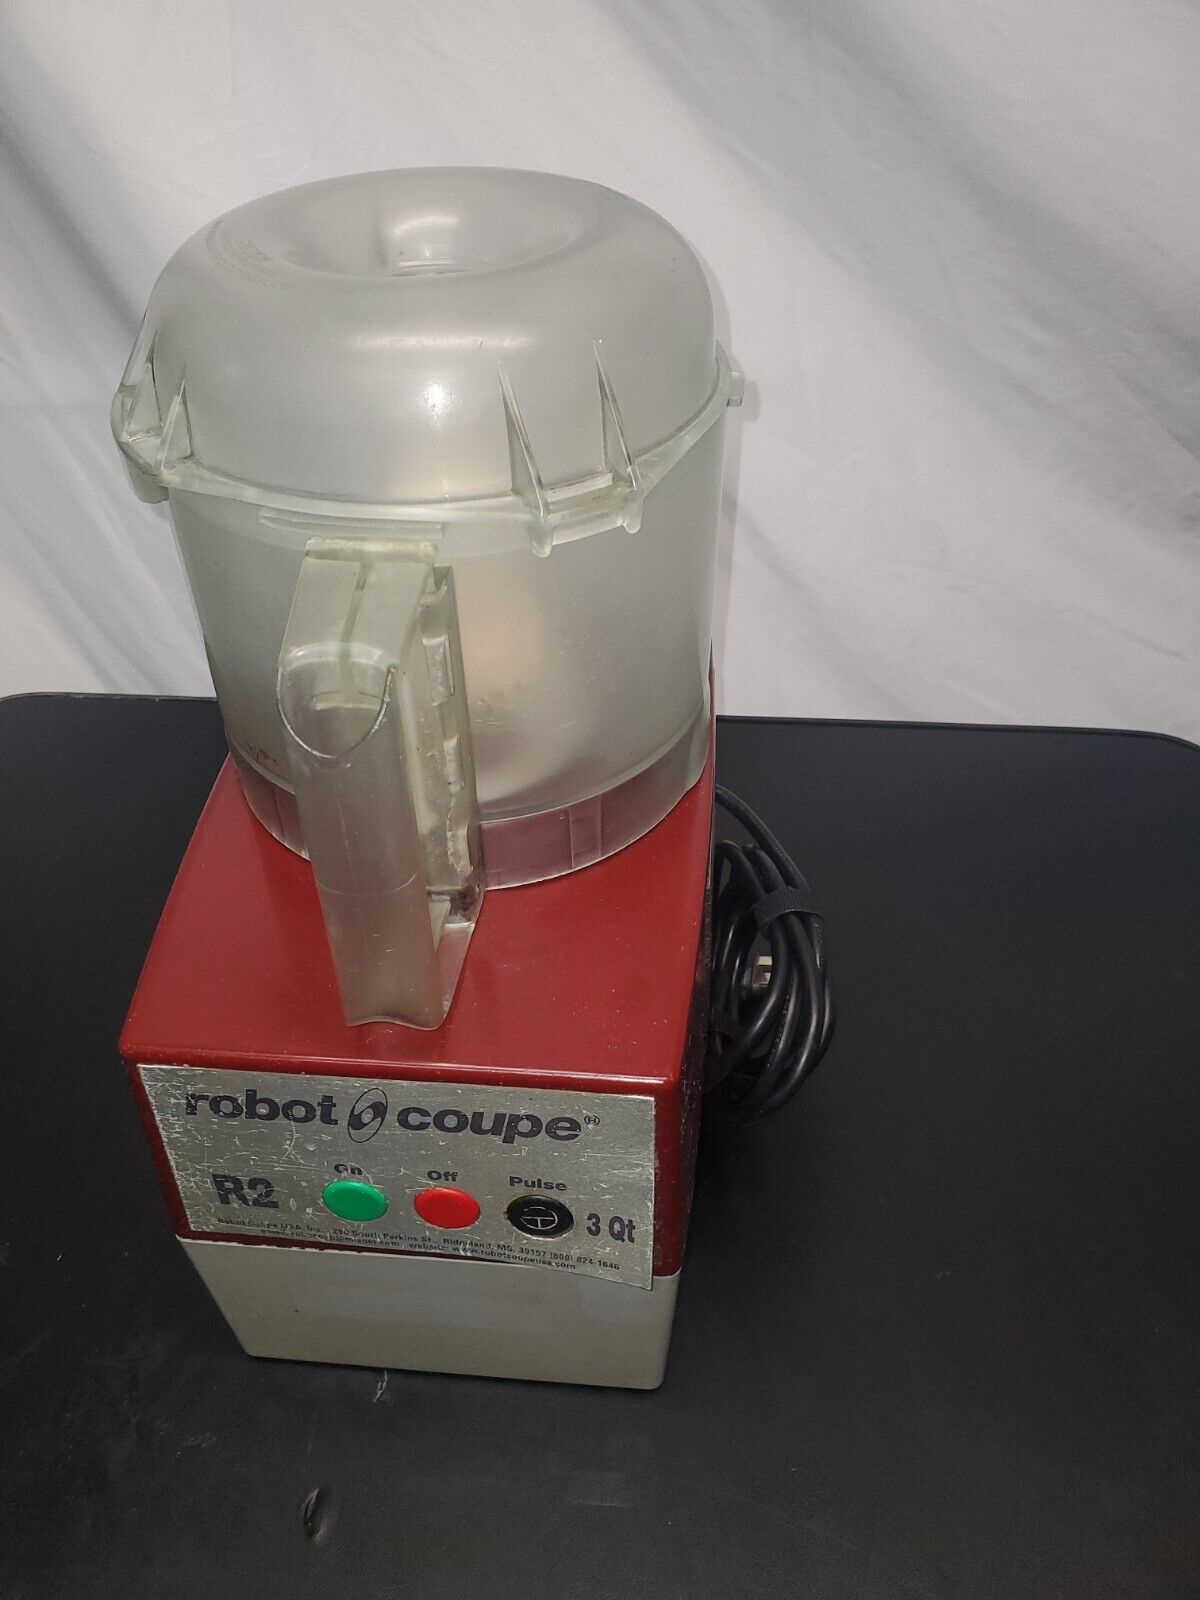 Robot Coupe R2 3Qt Commercial Food Processor, 